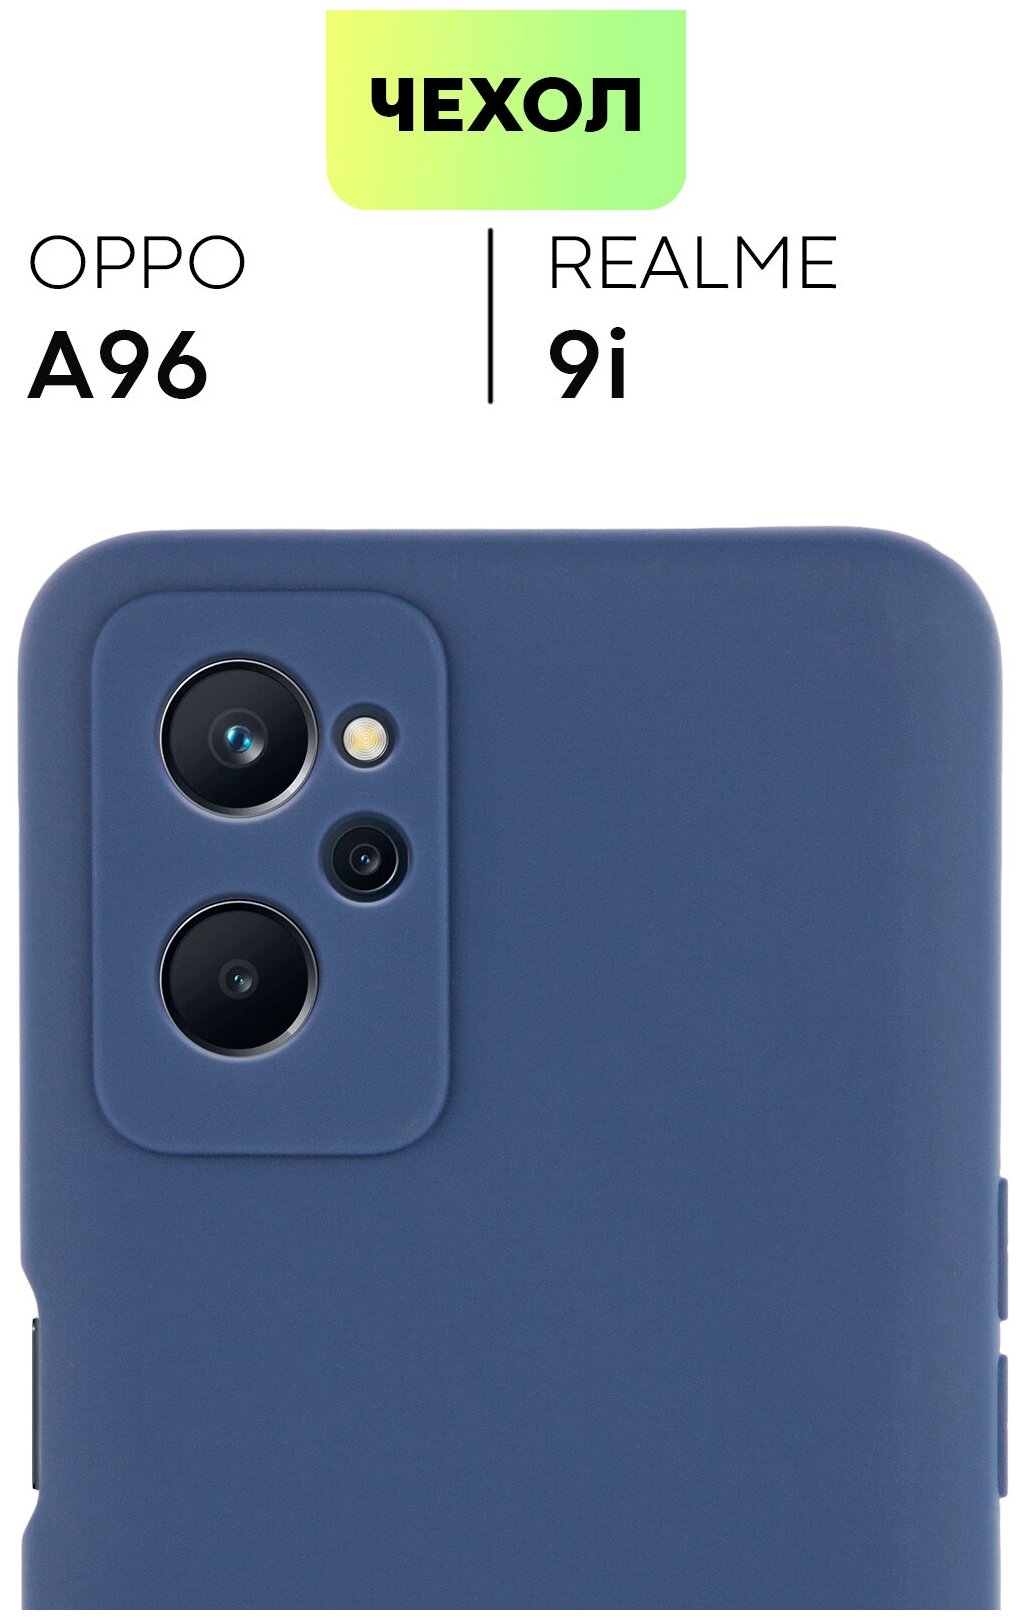 Чехол для Realme 9i и OPPO A96, BROSCORP накладка с защитой модуля камер, тонкий с матовым soft-touch покрытием, синий